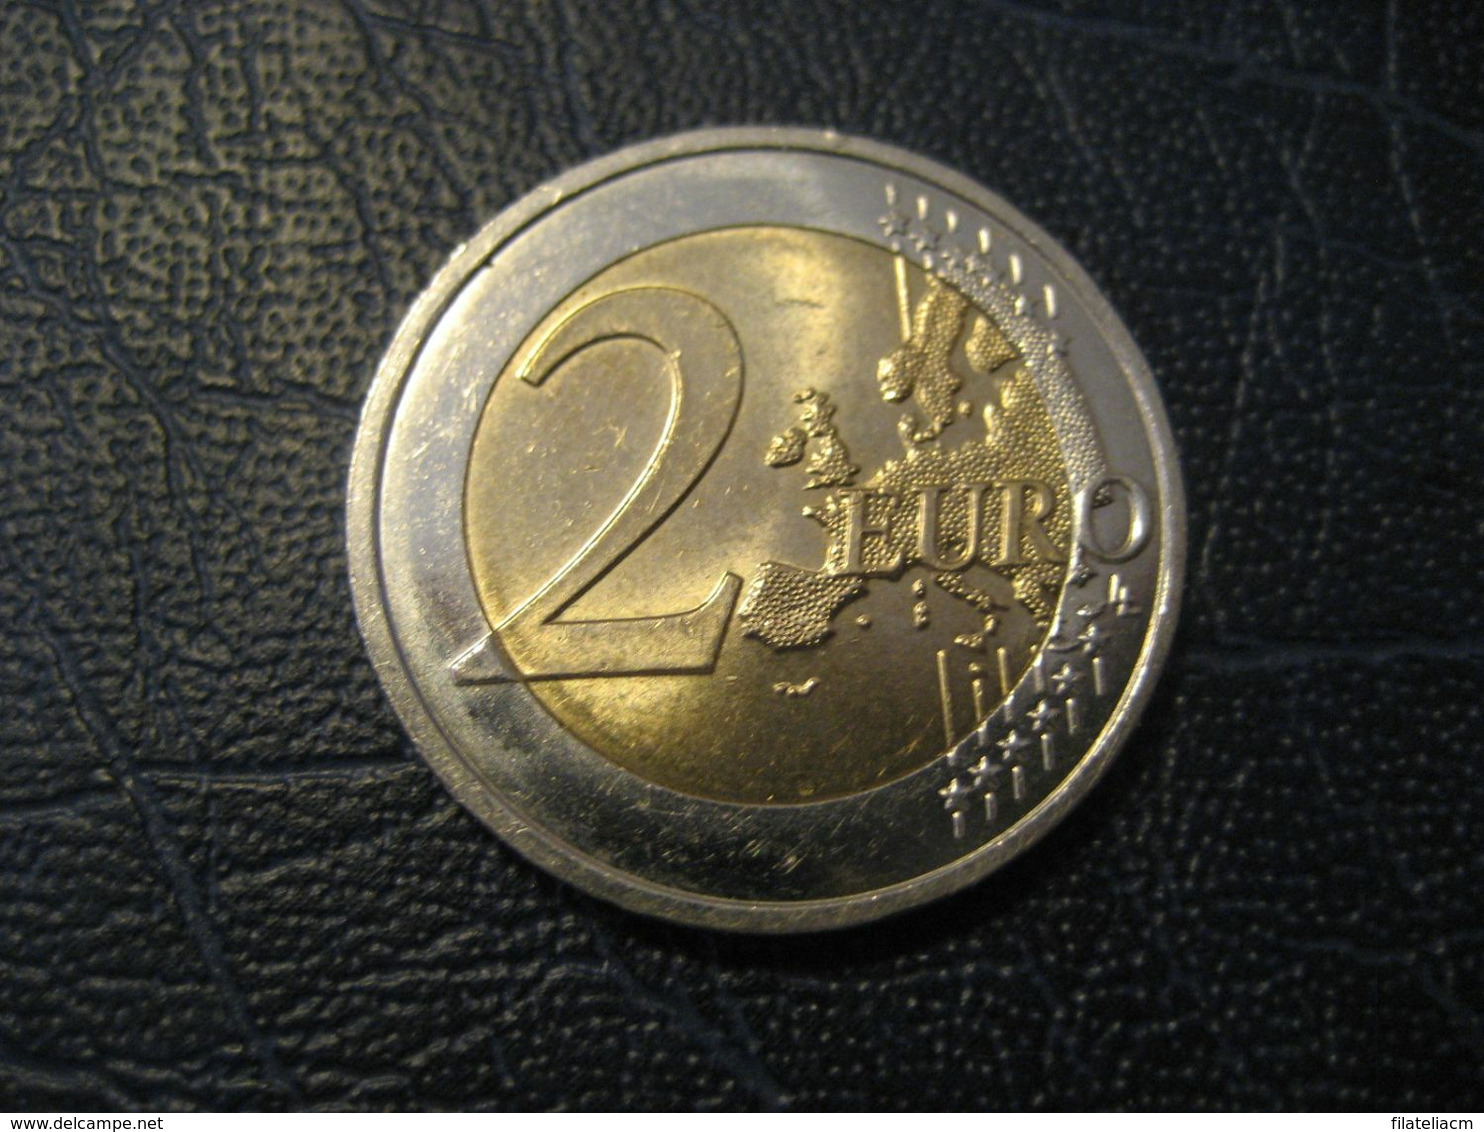 2 EUR 2015 ANDORRA Bi-metallic Coat Of Arms Good Condition Euro Coin - Andorra